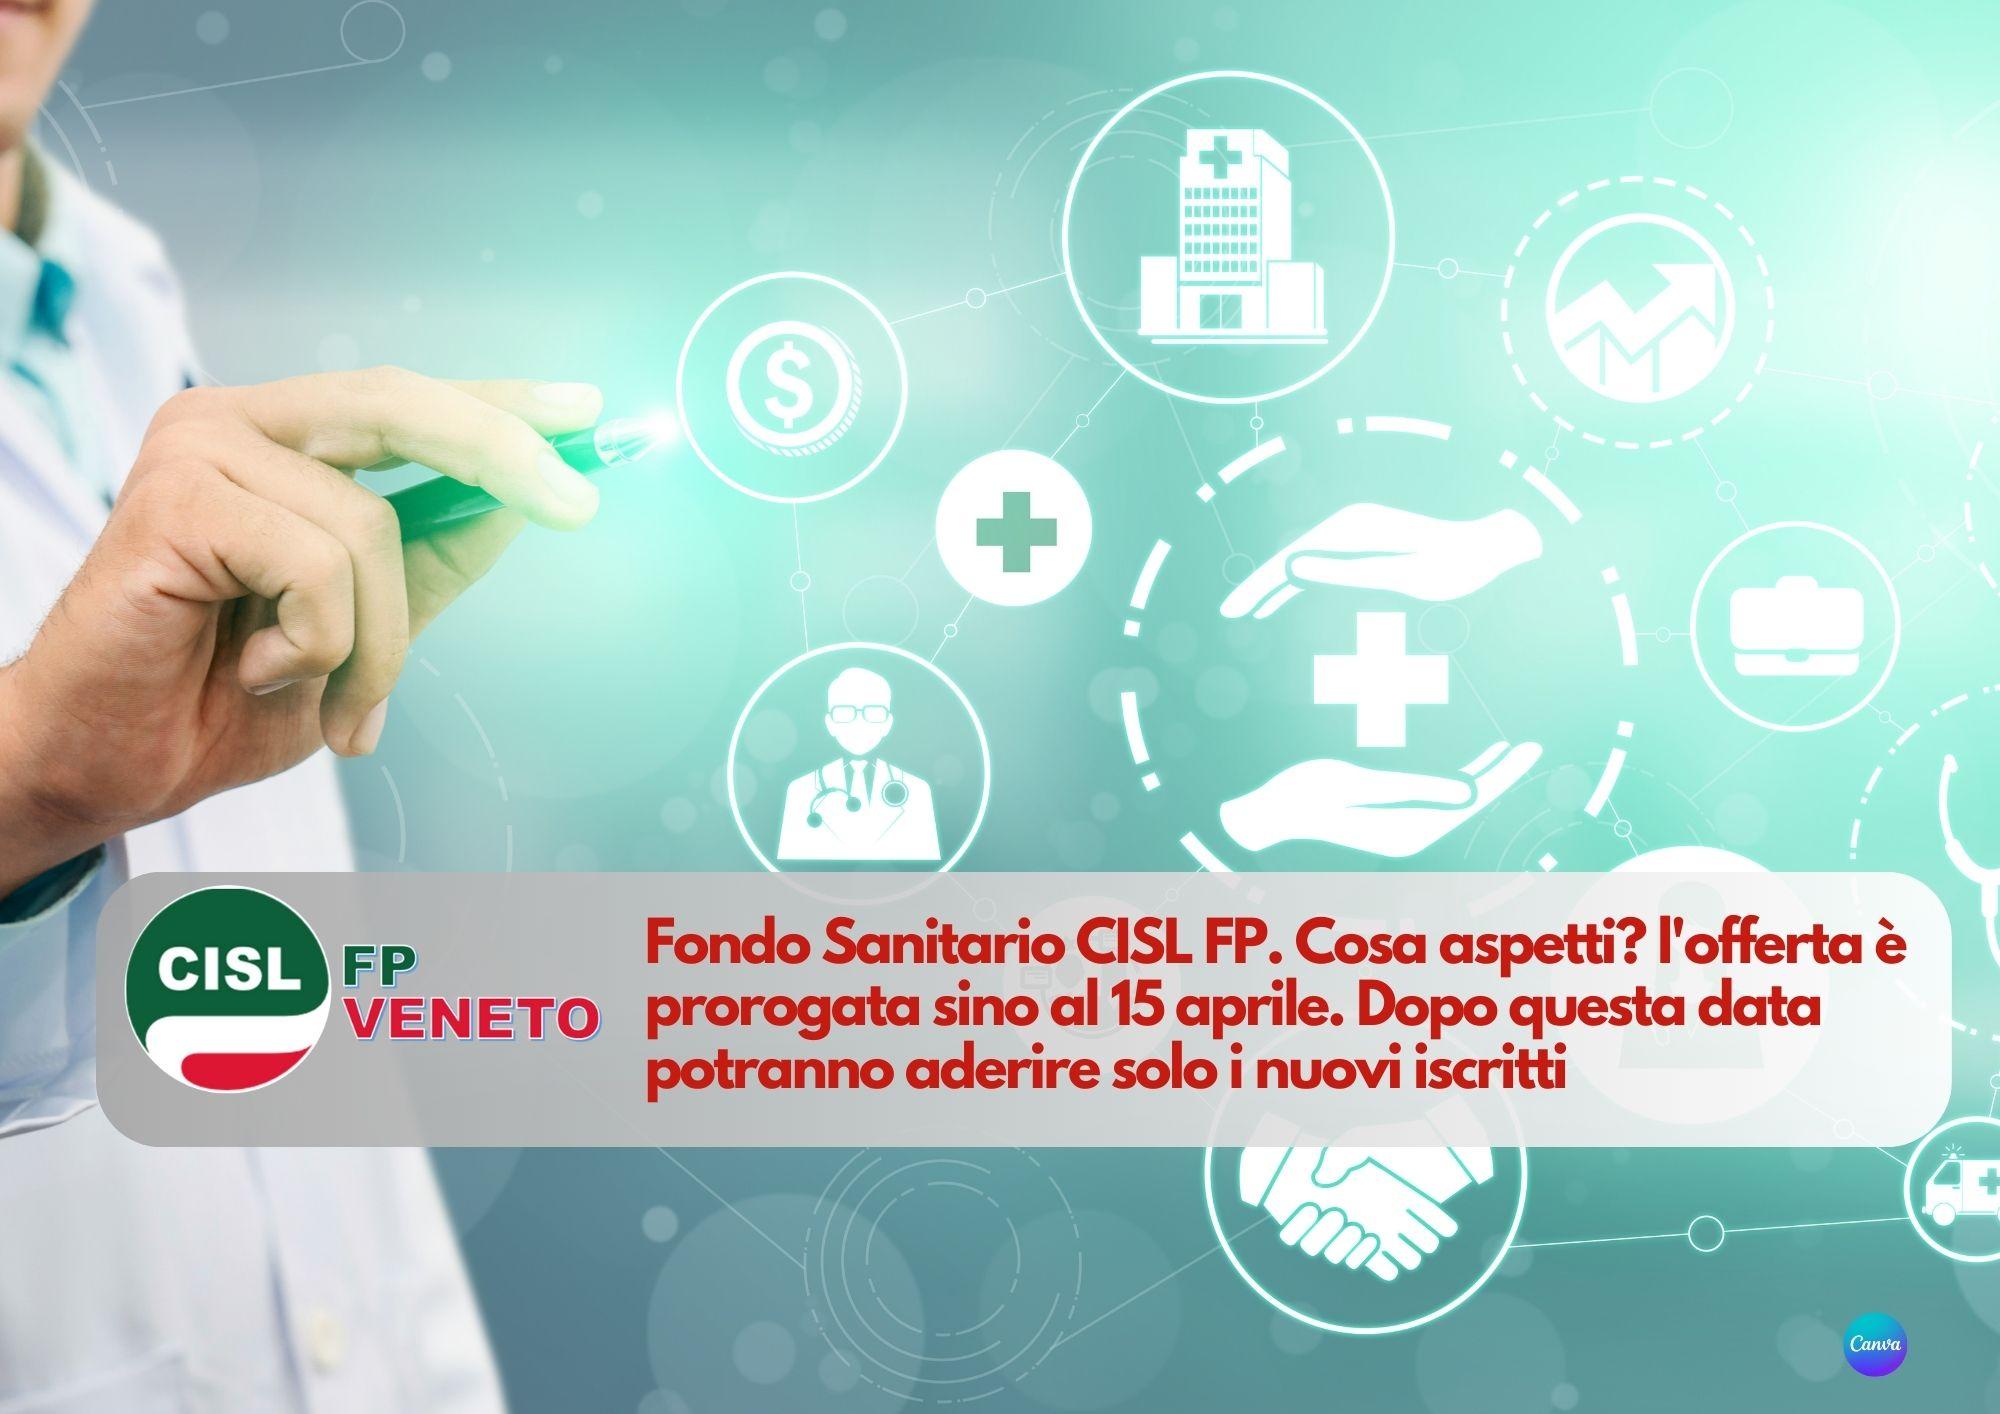 CISL FP Veneto. Fondo Sanitario CISL FP. Cosa aspetti? l'offerta è prorogata sino al 15 aprile